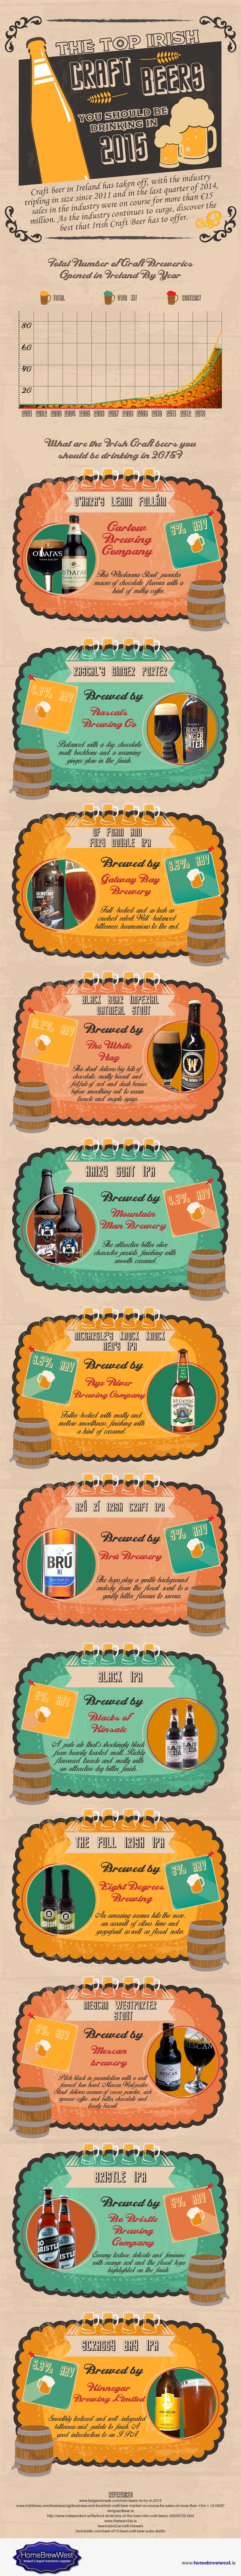 Top-Irish-Craft-Beers-Infographic.jpg